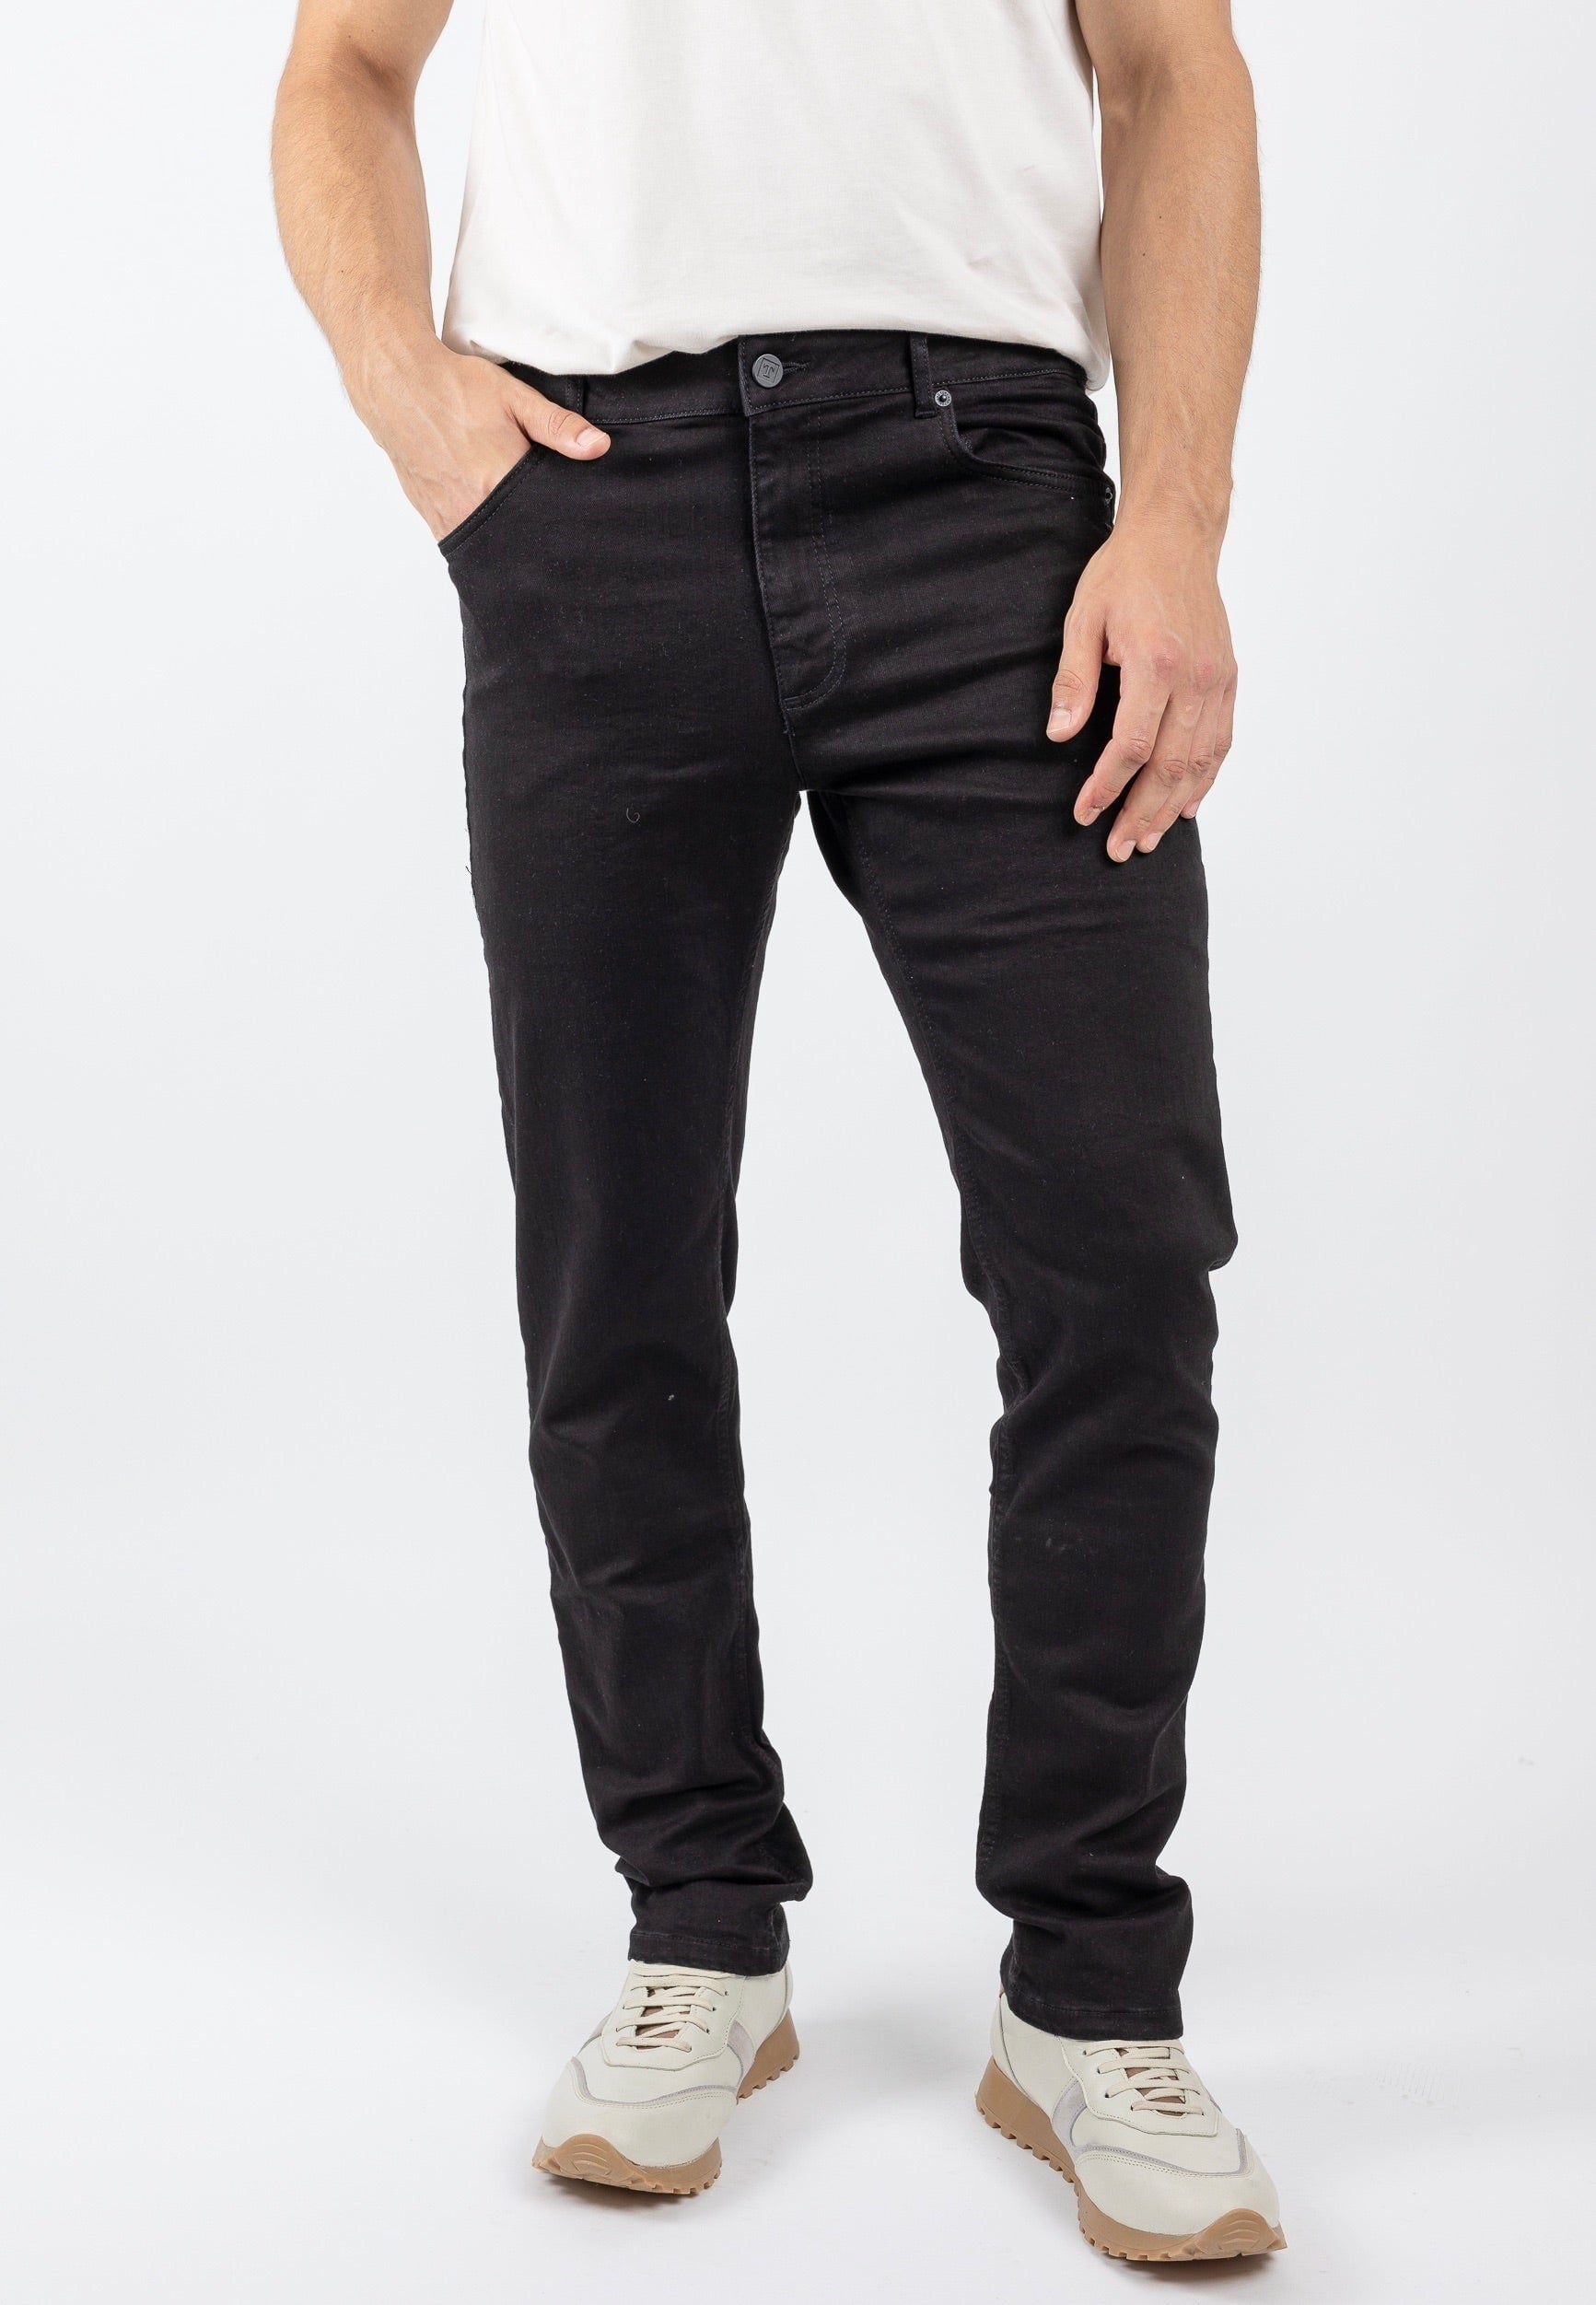 Slim Fit Jeans Modell: Benny von Torland